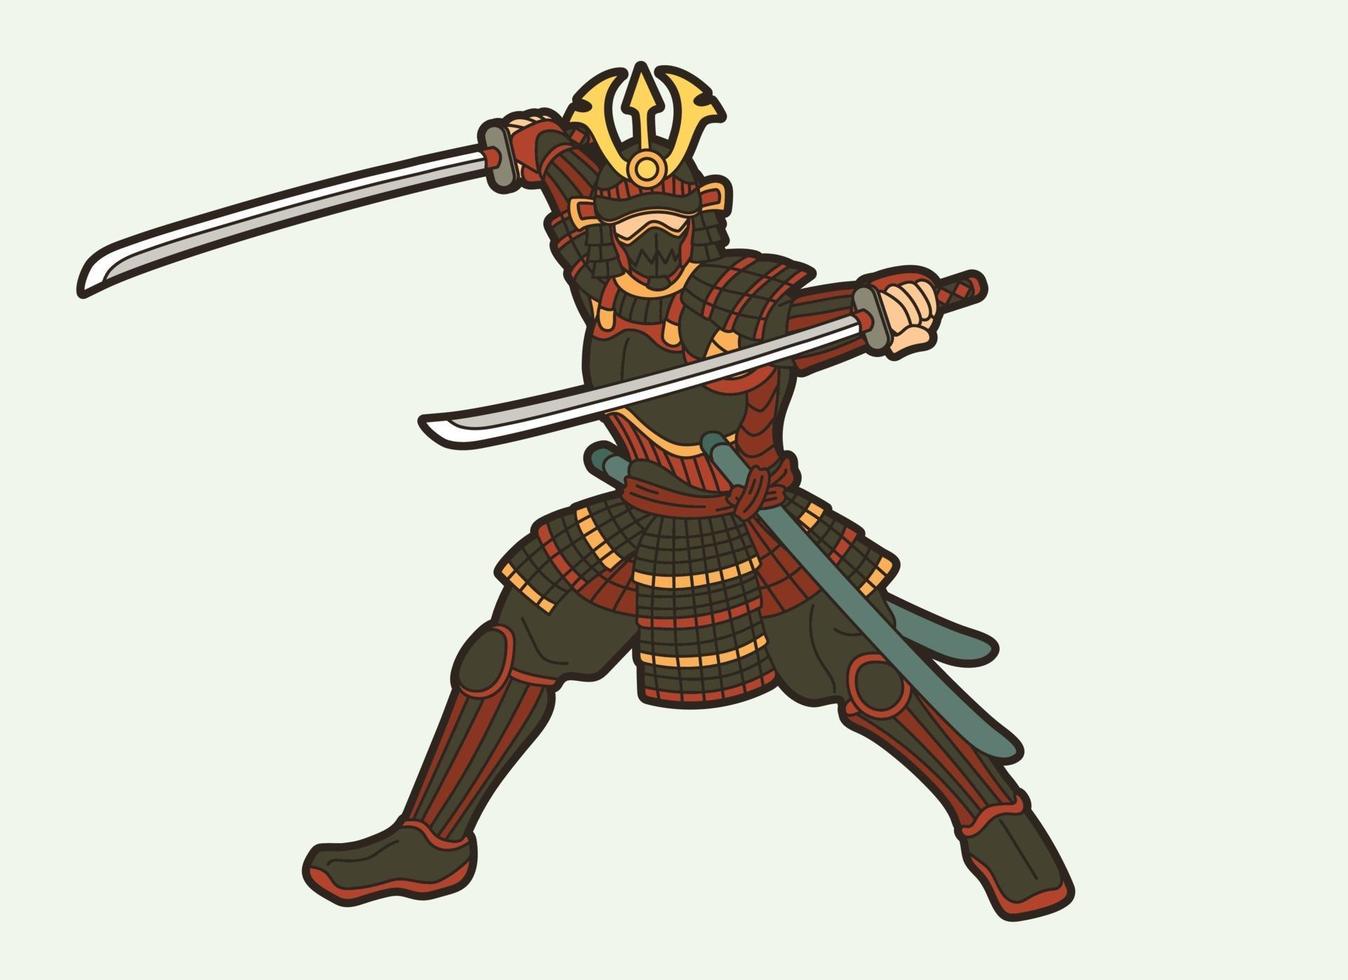 Cartoon Samurai Warrior with Weapon Action vector